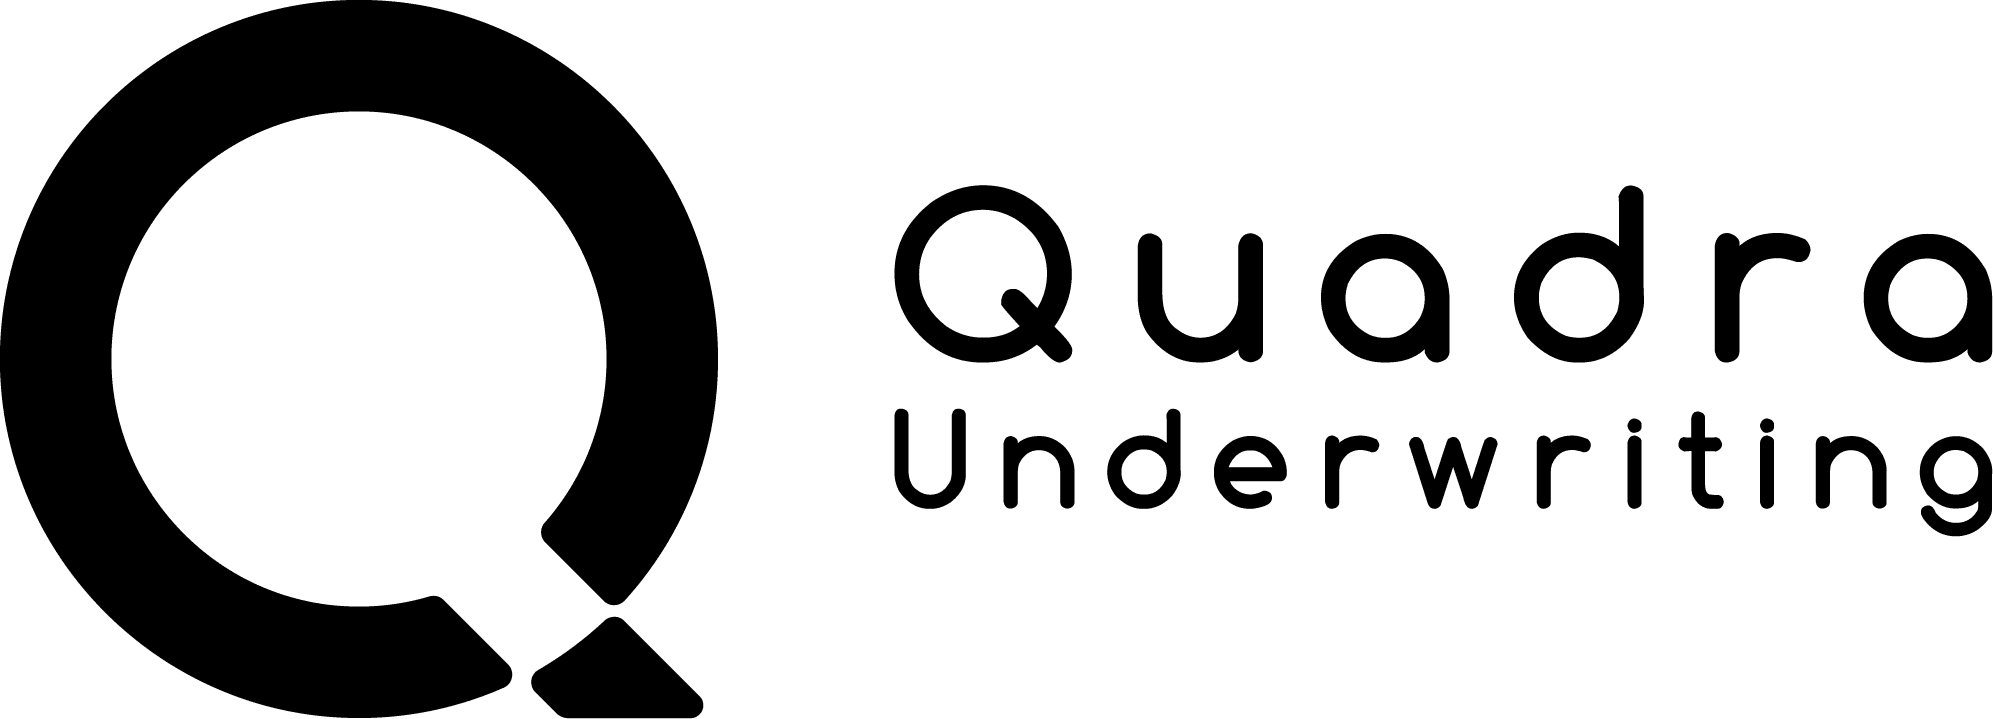 Informacje o pośredniku ubezpieczeniowym - Quadra Underwriting